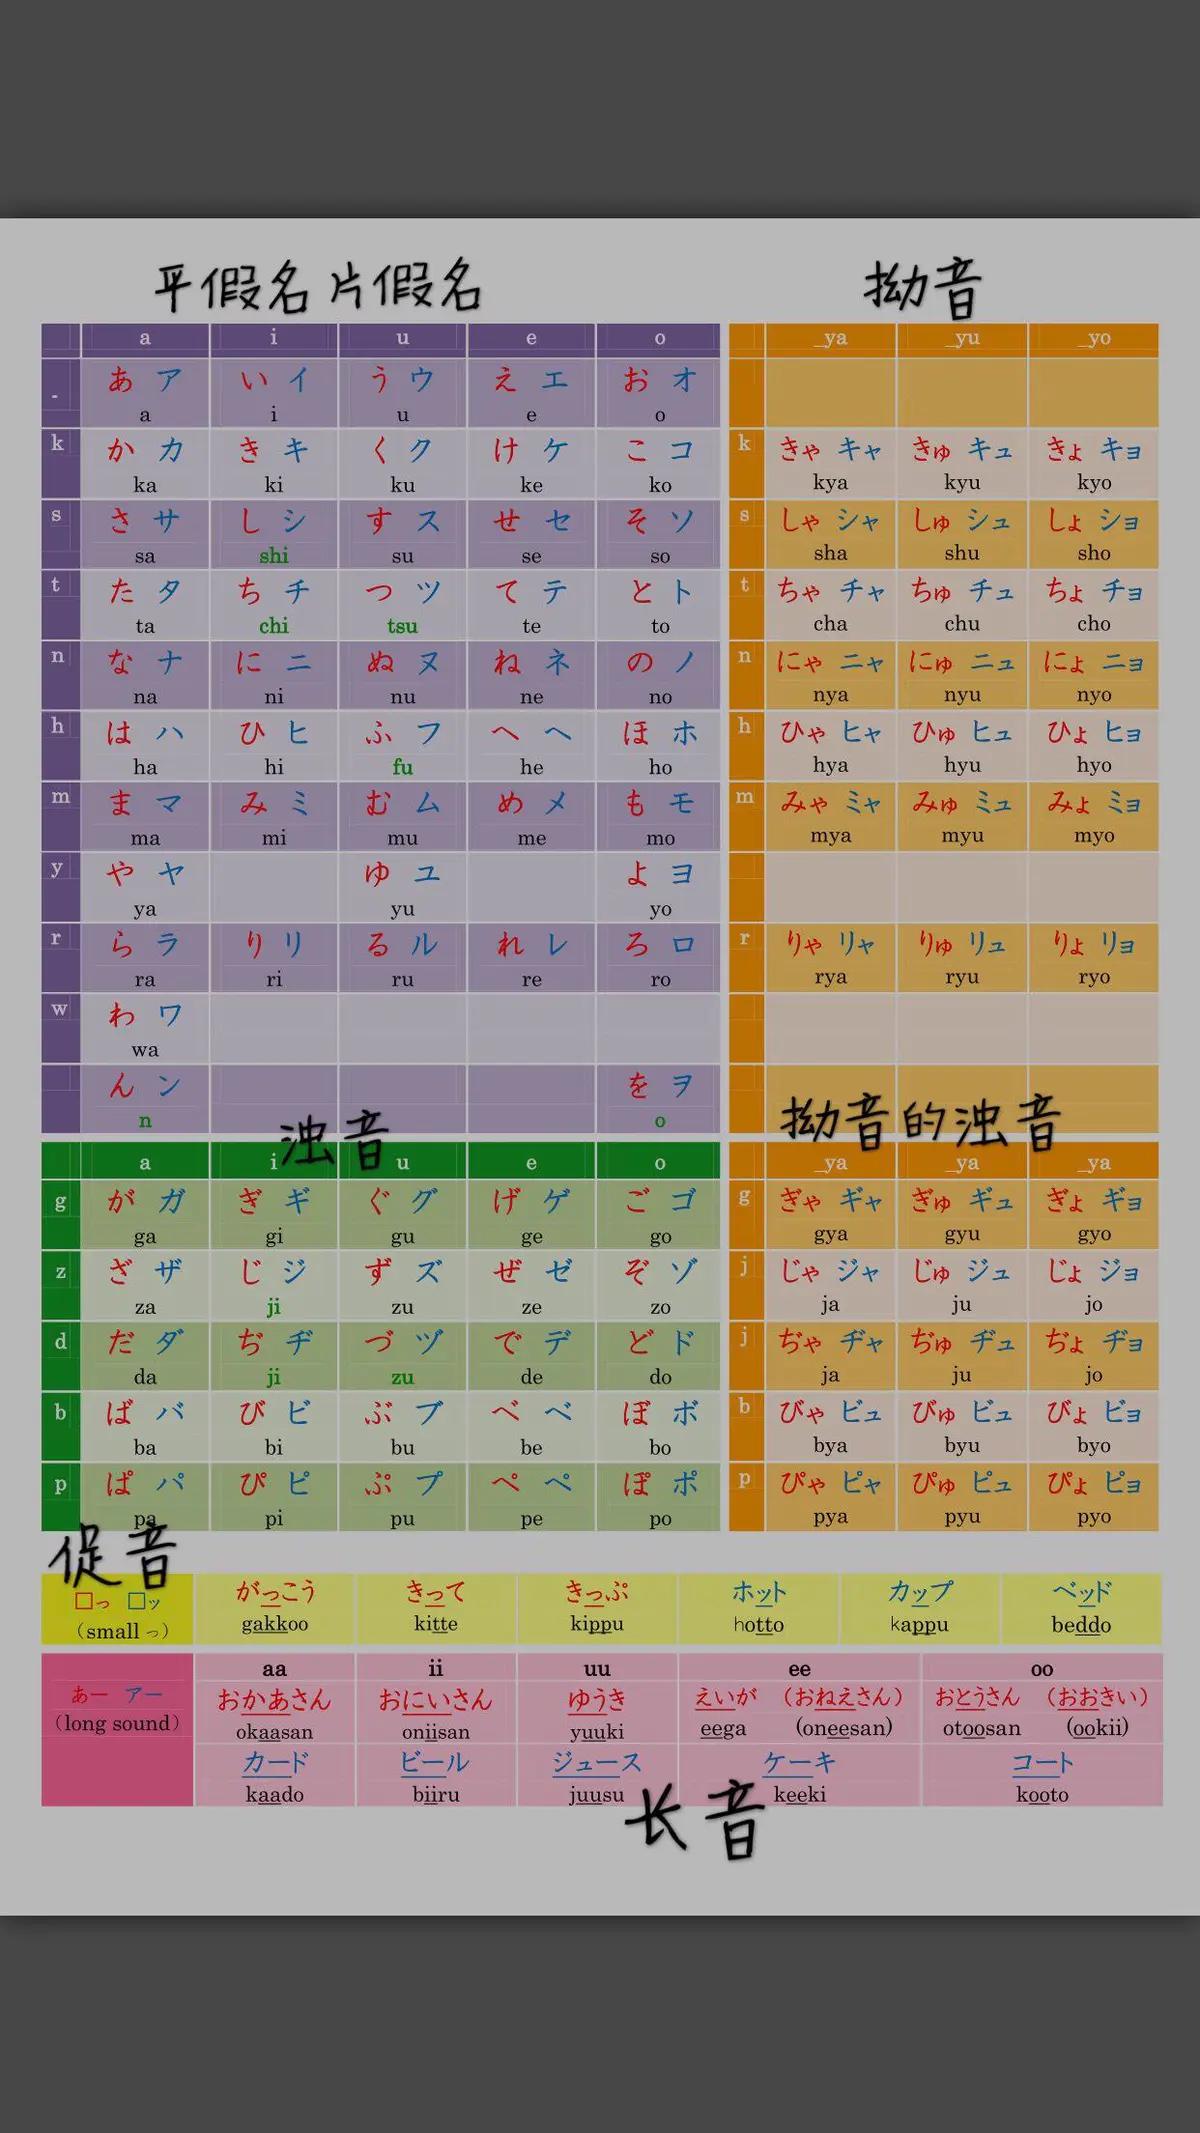 慈溪学日语的五十音图—片假名,促音,长音和浊音